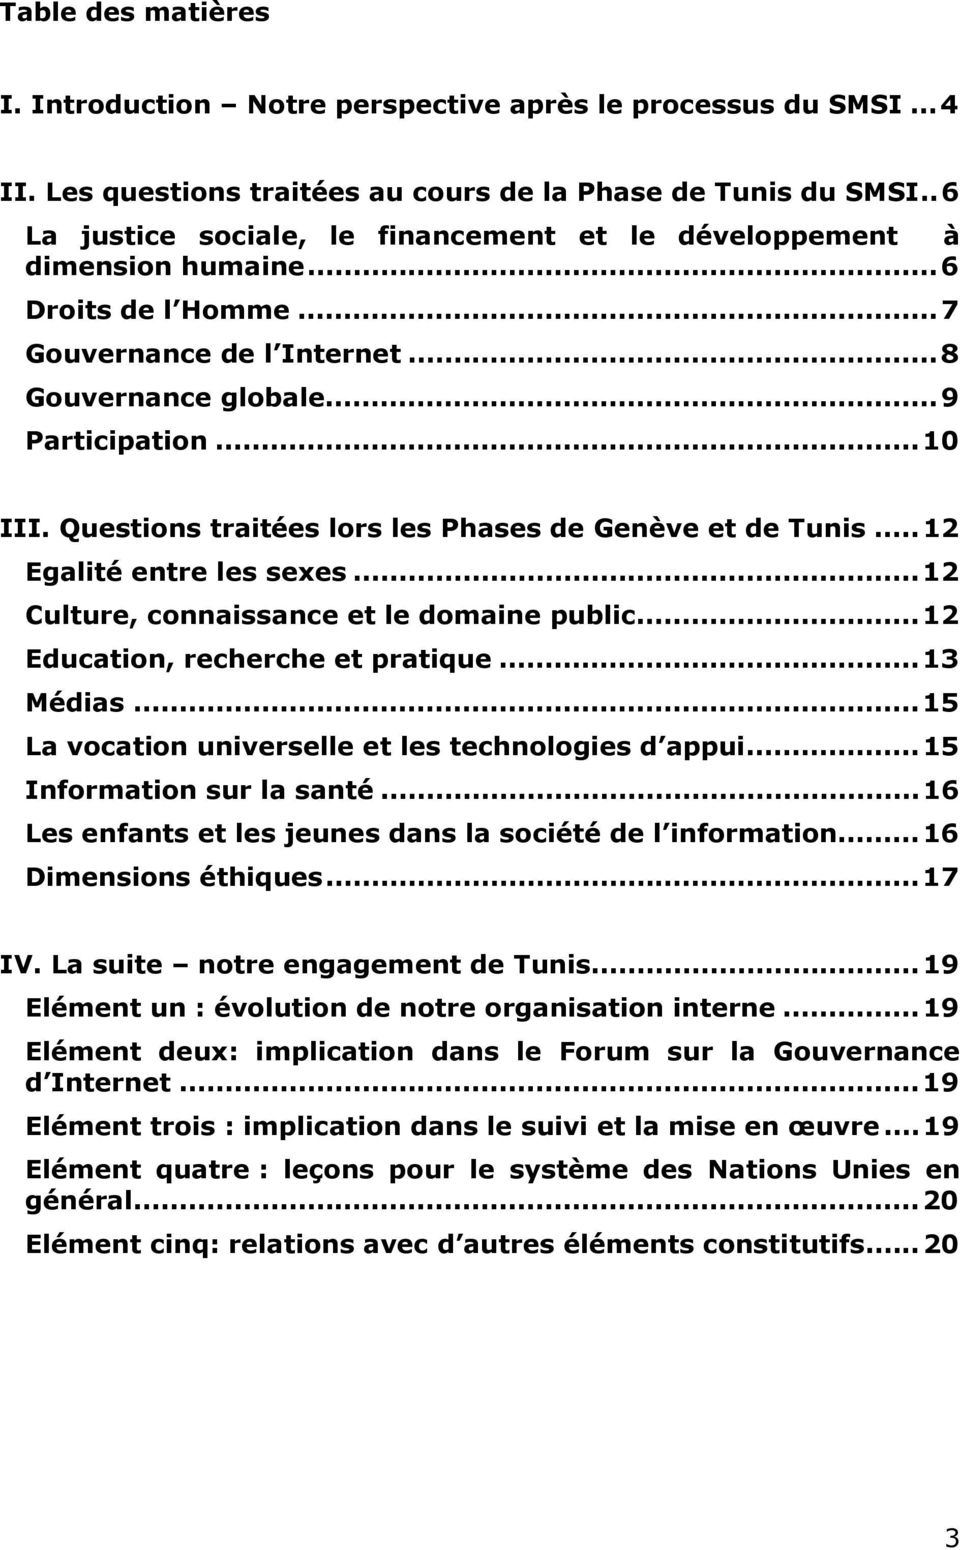 Questions traitées lors les Phases de Genève et de Tunis...12 Egalité entre les sexes...12 Culture, connaissance et le domaine public...12 Education, recherche et pratique...13 Médias.